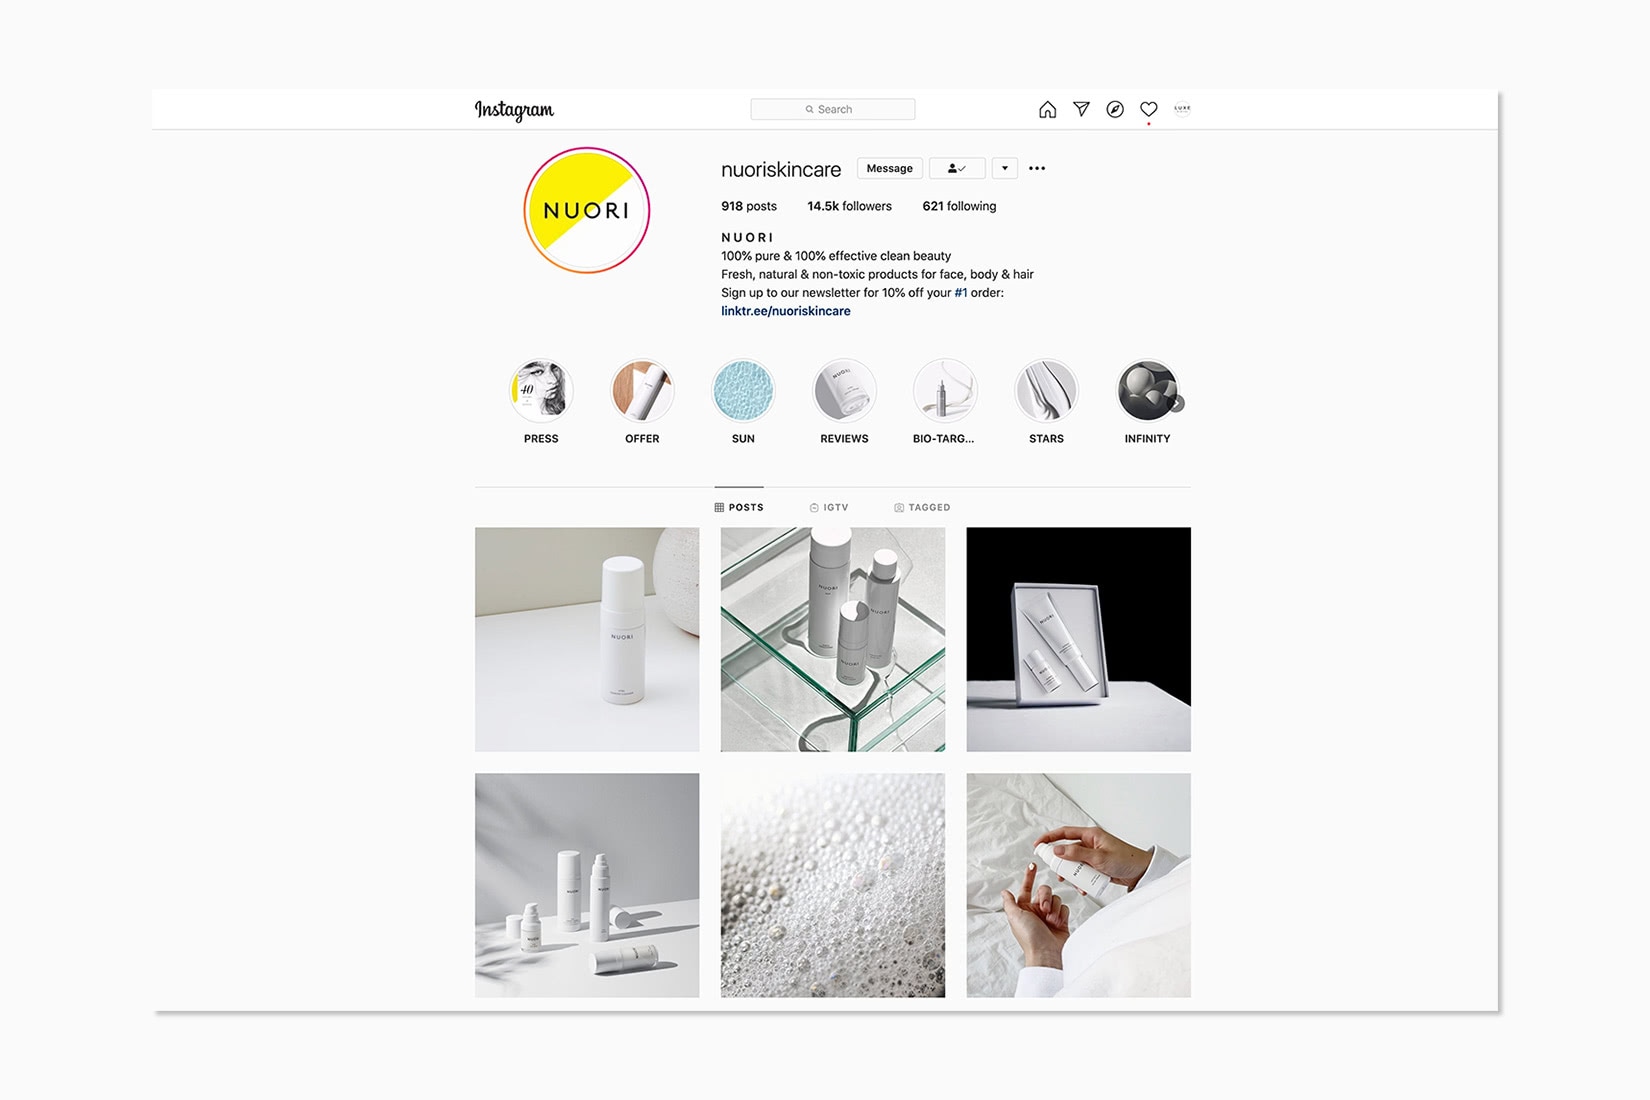 online luxury beauty retail nuori instagram - Luxe Digital